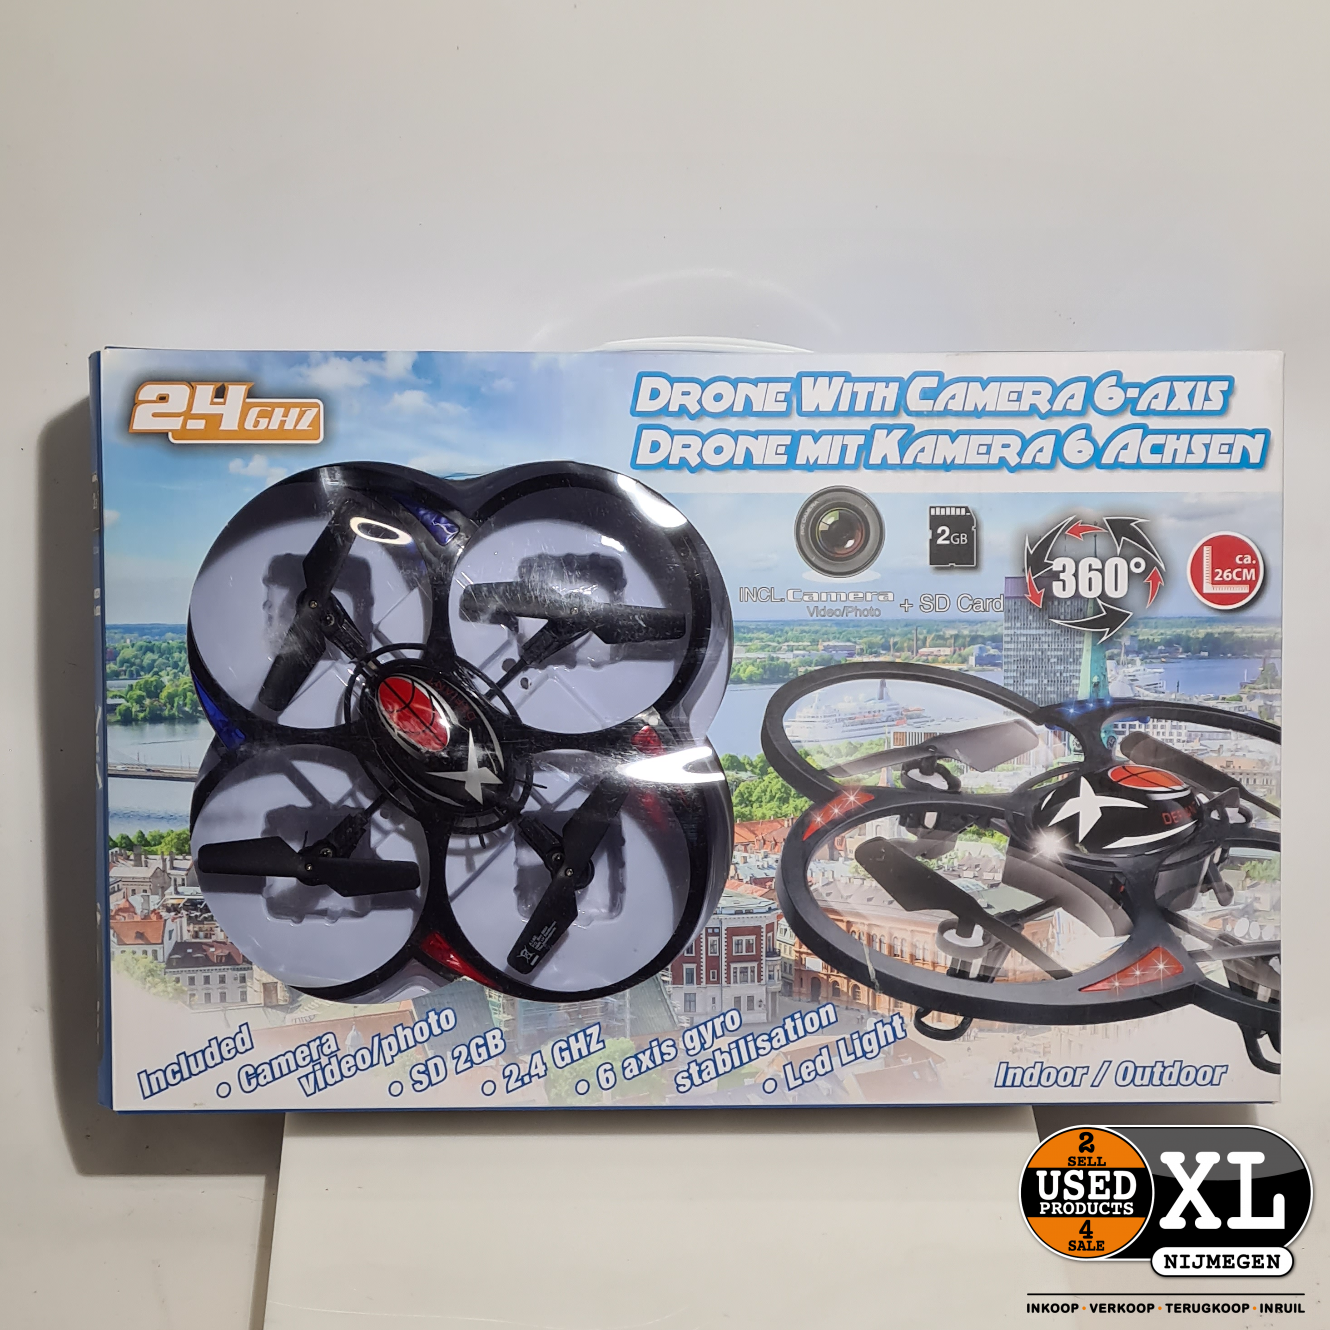 brandwonden Schilderen telex Eddy Toys Drone Camera Met 6 Assen | Nieuw - Used Products Nijmegen XL